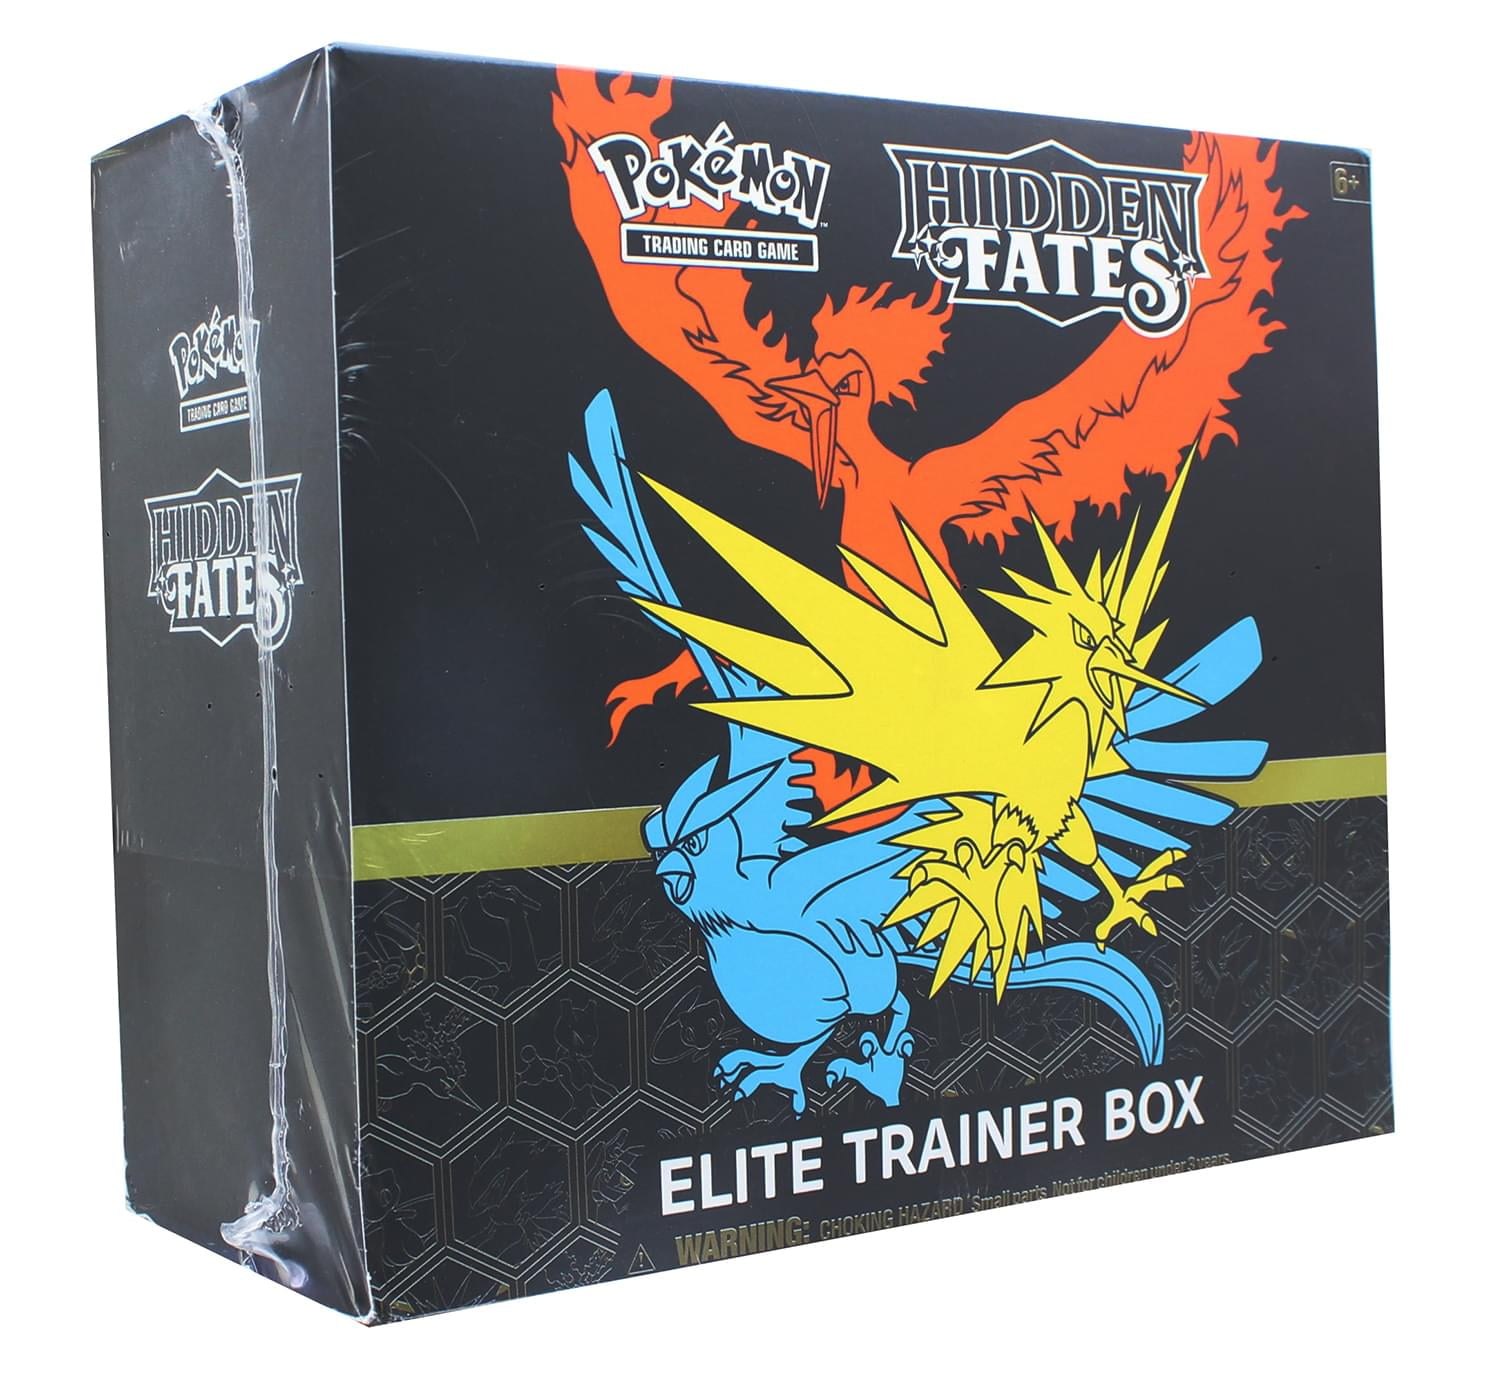 5x Pokemon Elite Trainer Box Plastic Protector Case champions path hidden fates 